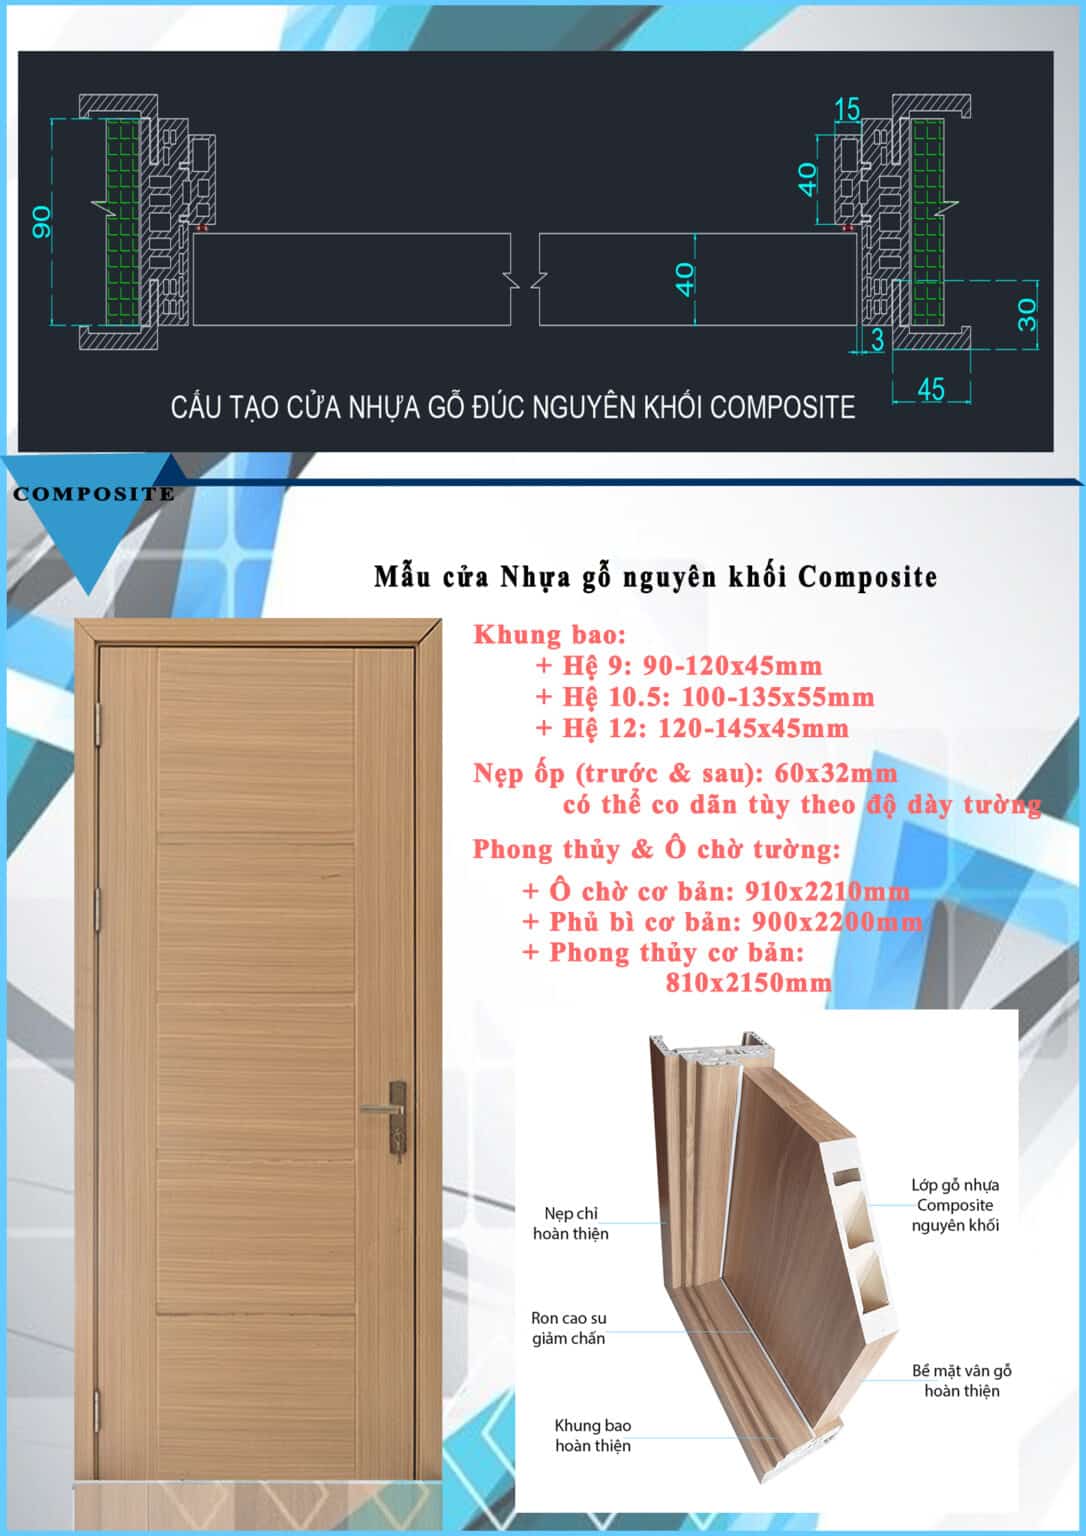 Cấu tạo tổng quan cửa nhựa gỗ composite